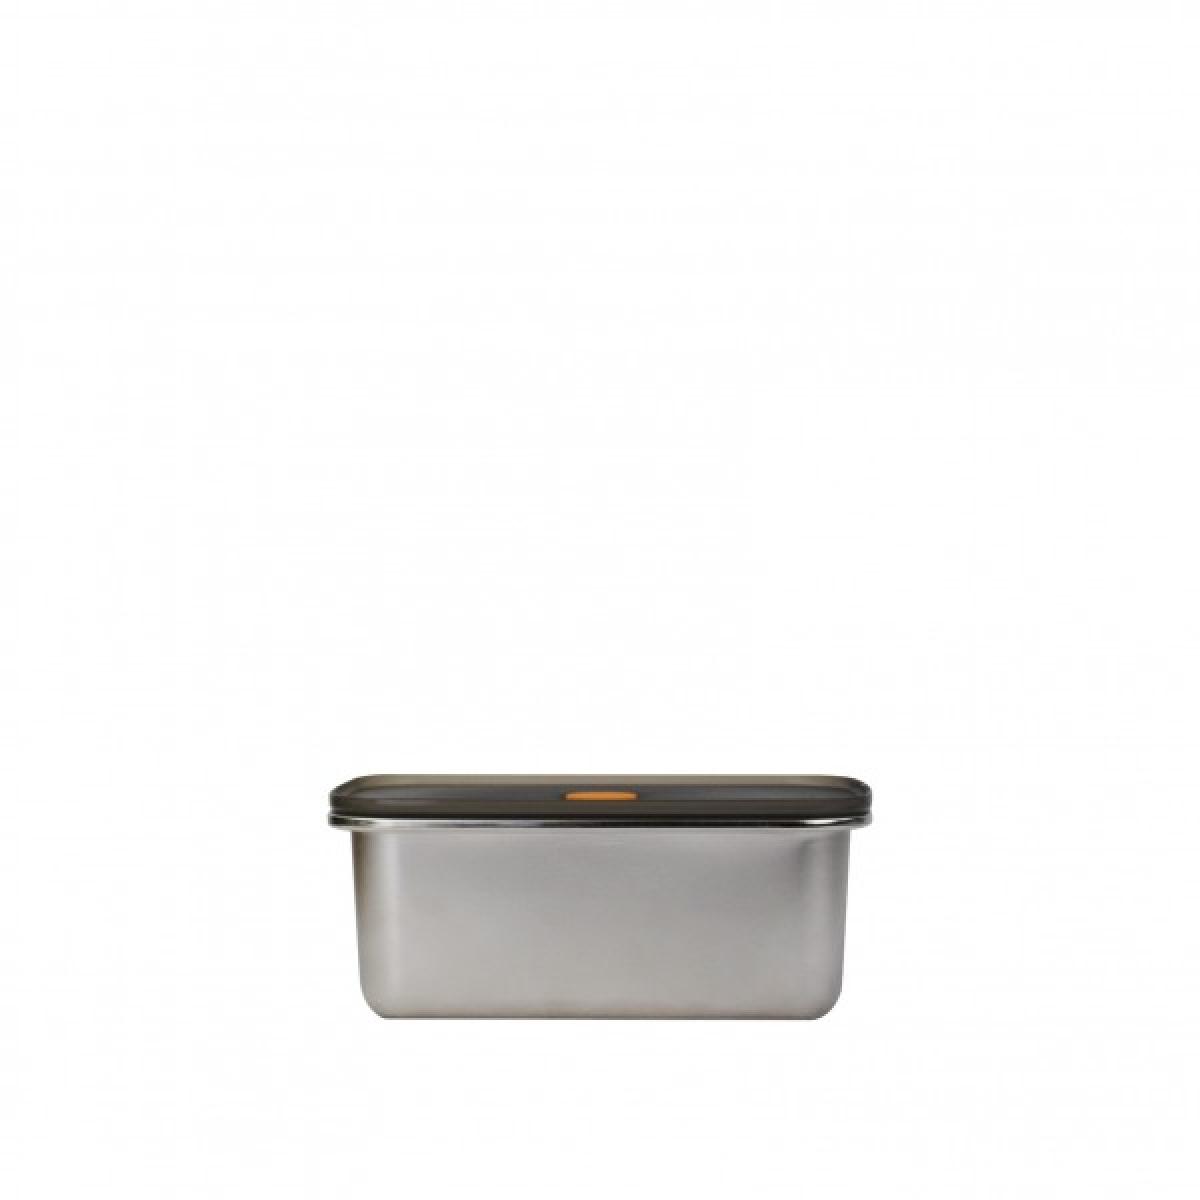 Yoko Design YD2034 Microwable stainless steel box black 1000 ml